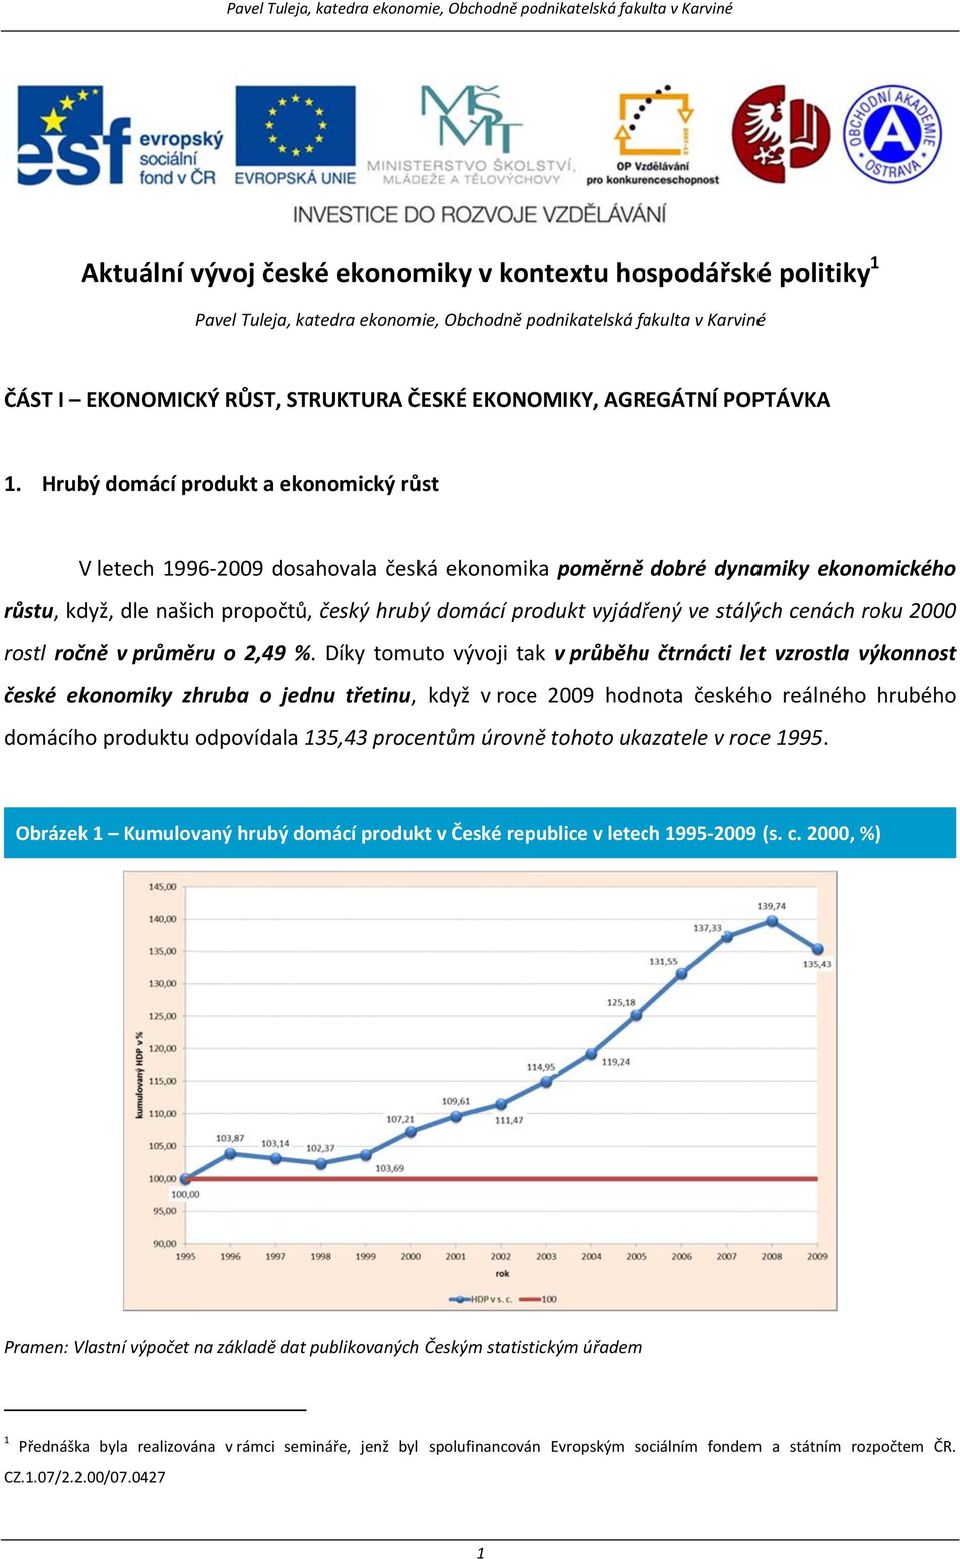 Hrubý domácí produkt a ekonomický růst V letech 1996-2009 dosahovala česká ekonomika poměrně dobré dynamiky ekonomického růstu, když, dle našich propočtů, český hrubýý domácí produkt vyjádřený ve